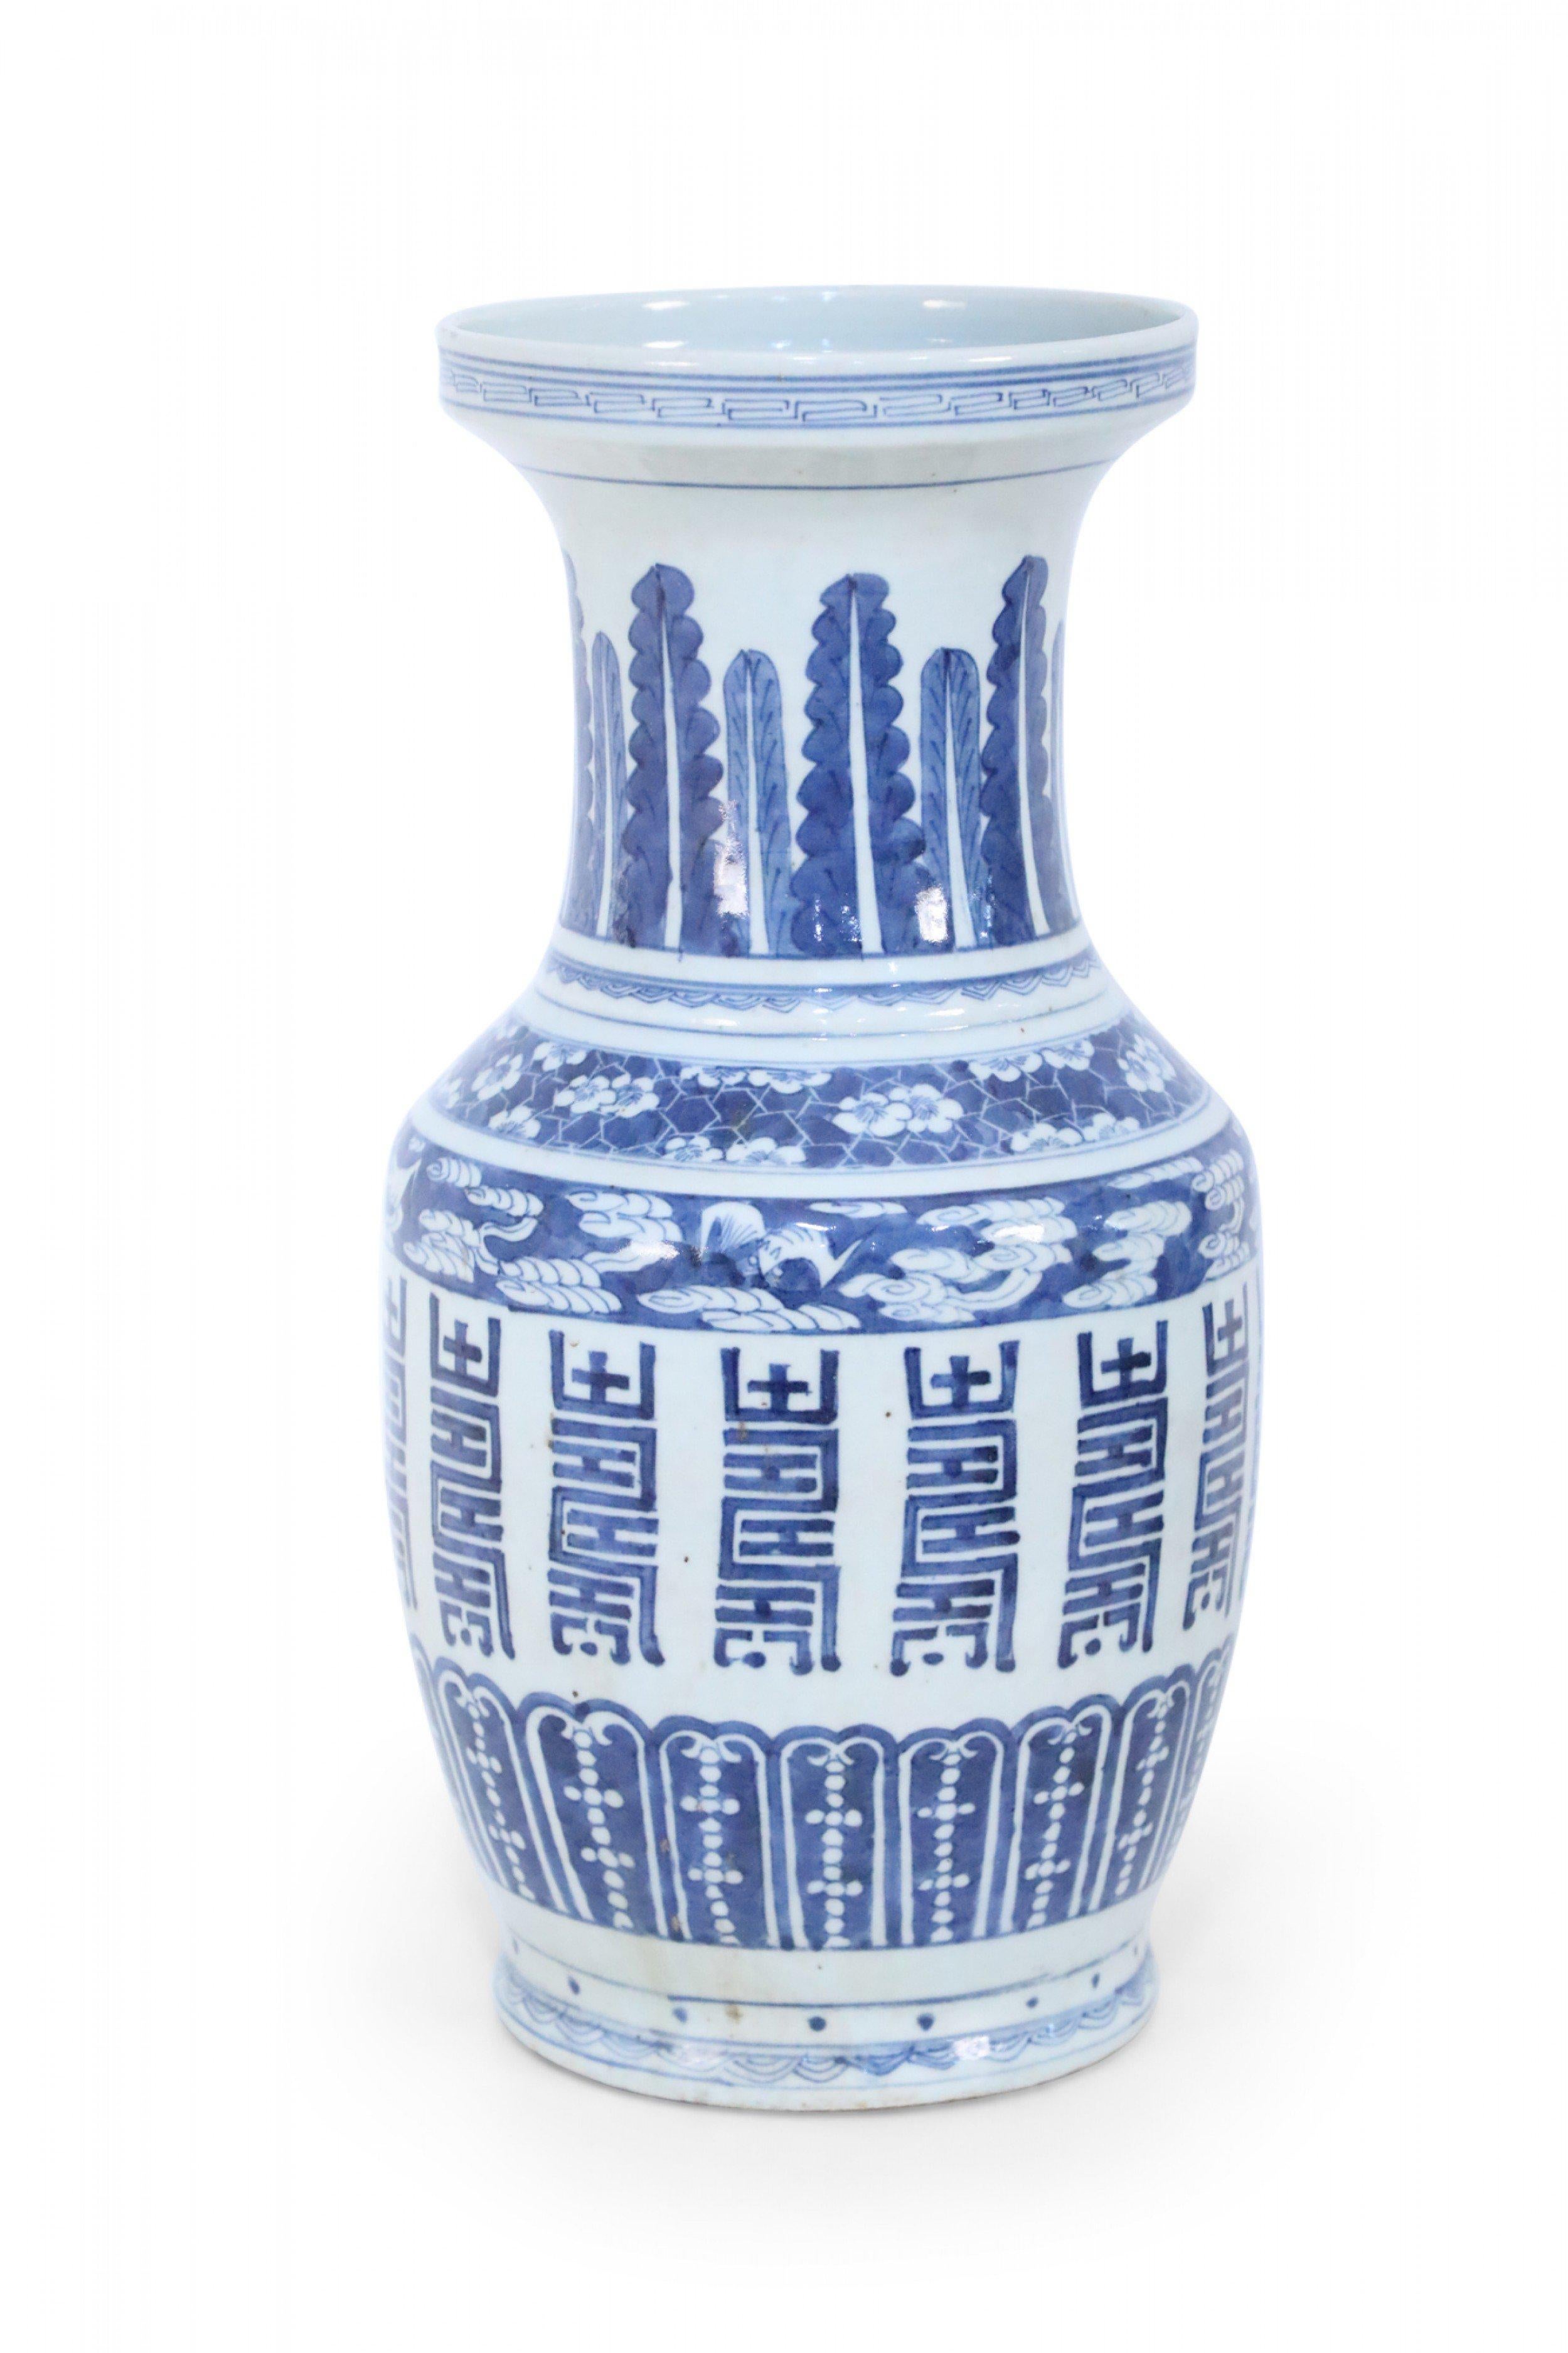 Urne aus weißem chinesischem Porzellan, bemalt mit einer Vielzahl von blauen, dekorativen Mustern, darunter Federn und kräftige vertikale Markierungen, die in einem ausgewogenen Verhältnis zueinander stehen und ein harmonisches Design ergeben.
     